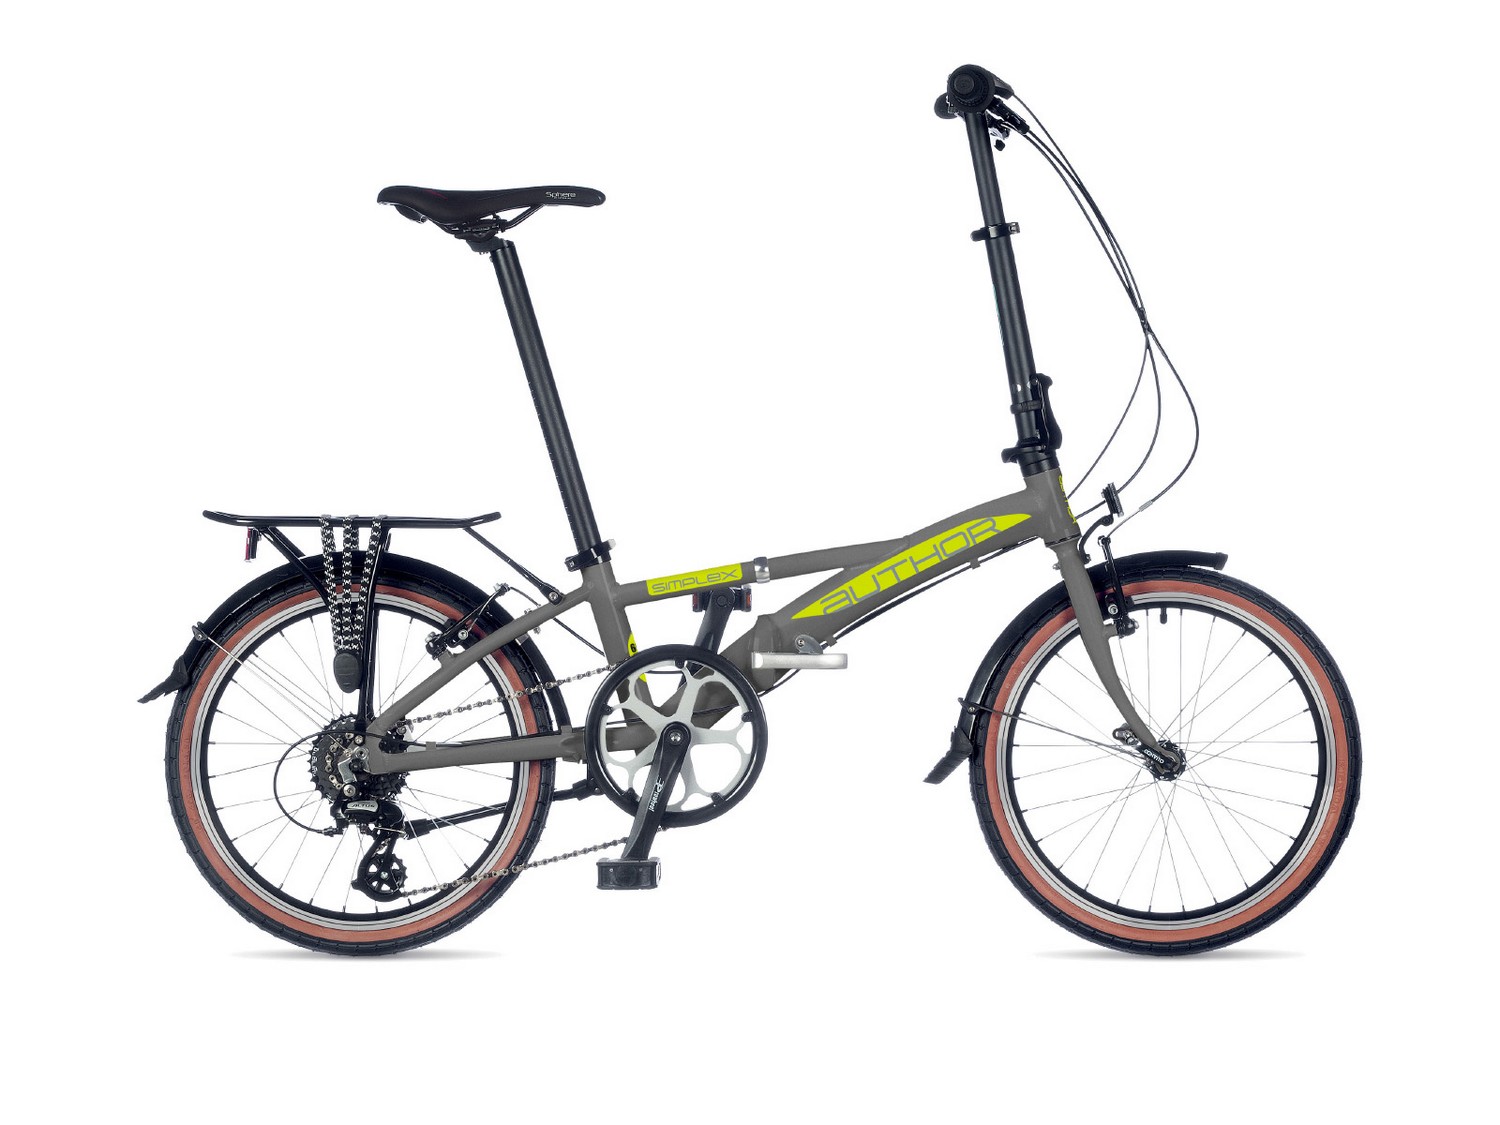 Складной велосипед Author Simplex 20, год 2021, цвет Серебристый-Зеленый